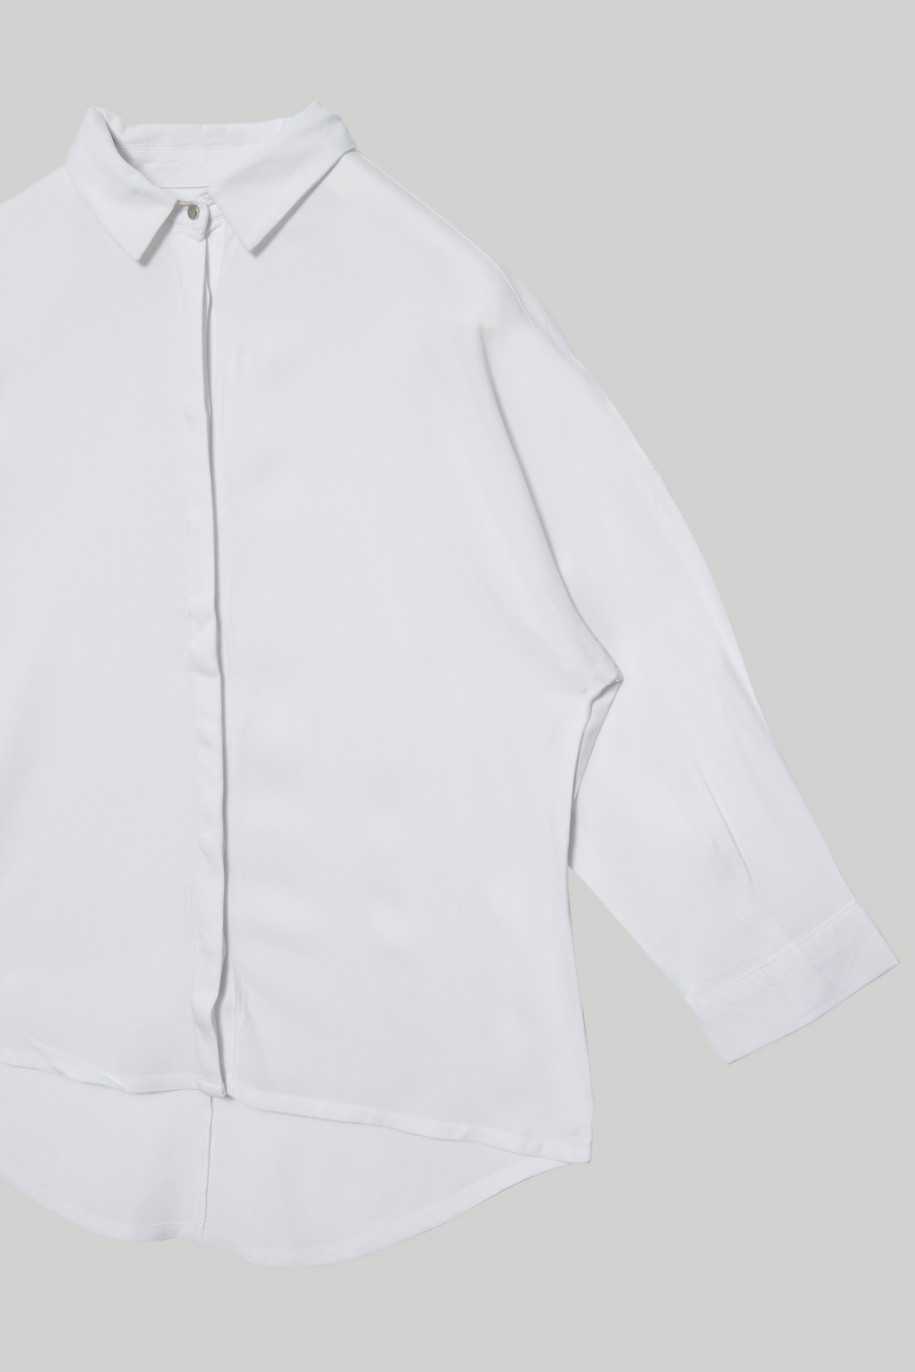 Klasyczna biała koszula z przedłużanym tyłem dla dziewczyny - 28274